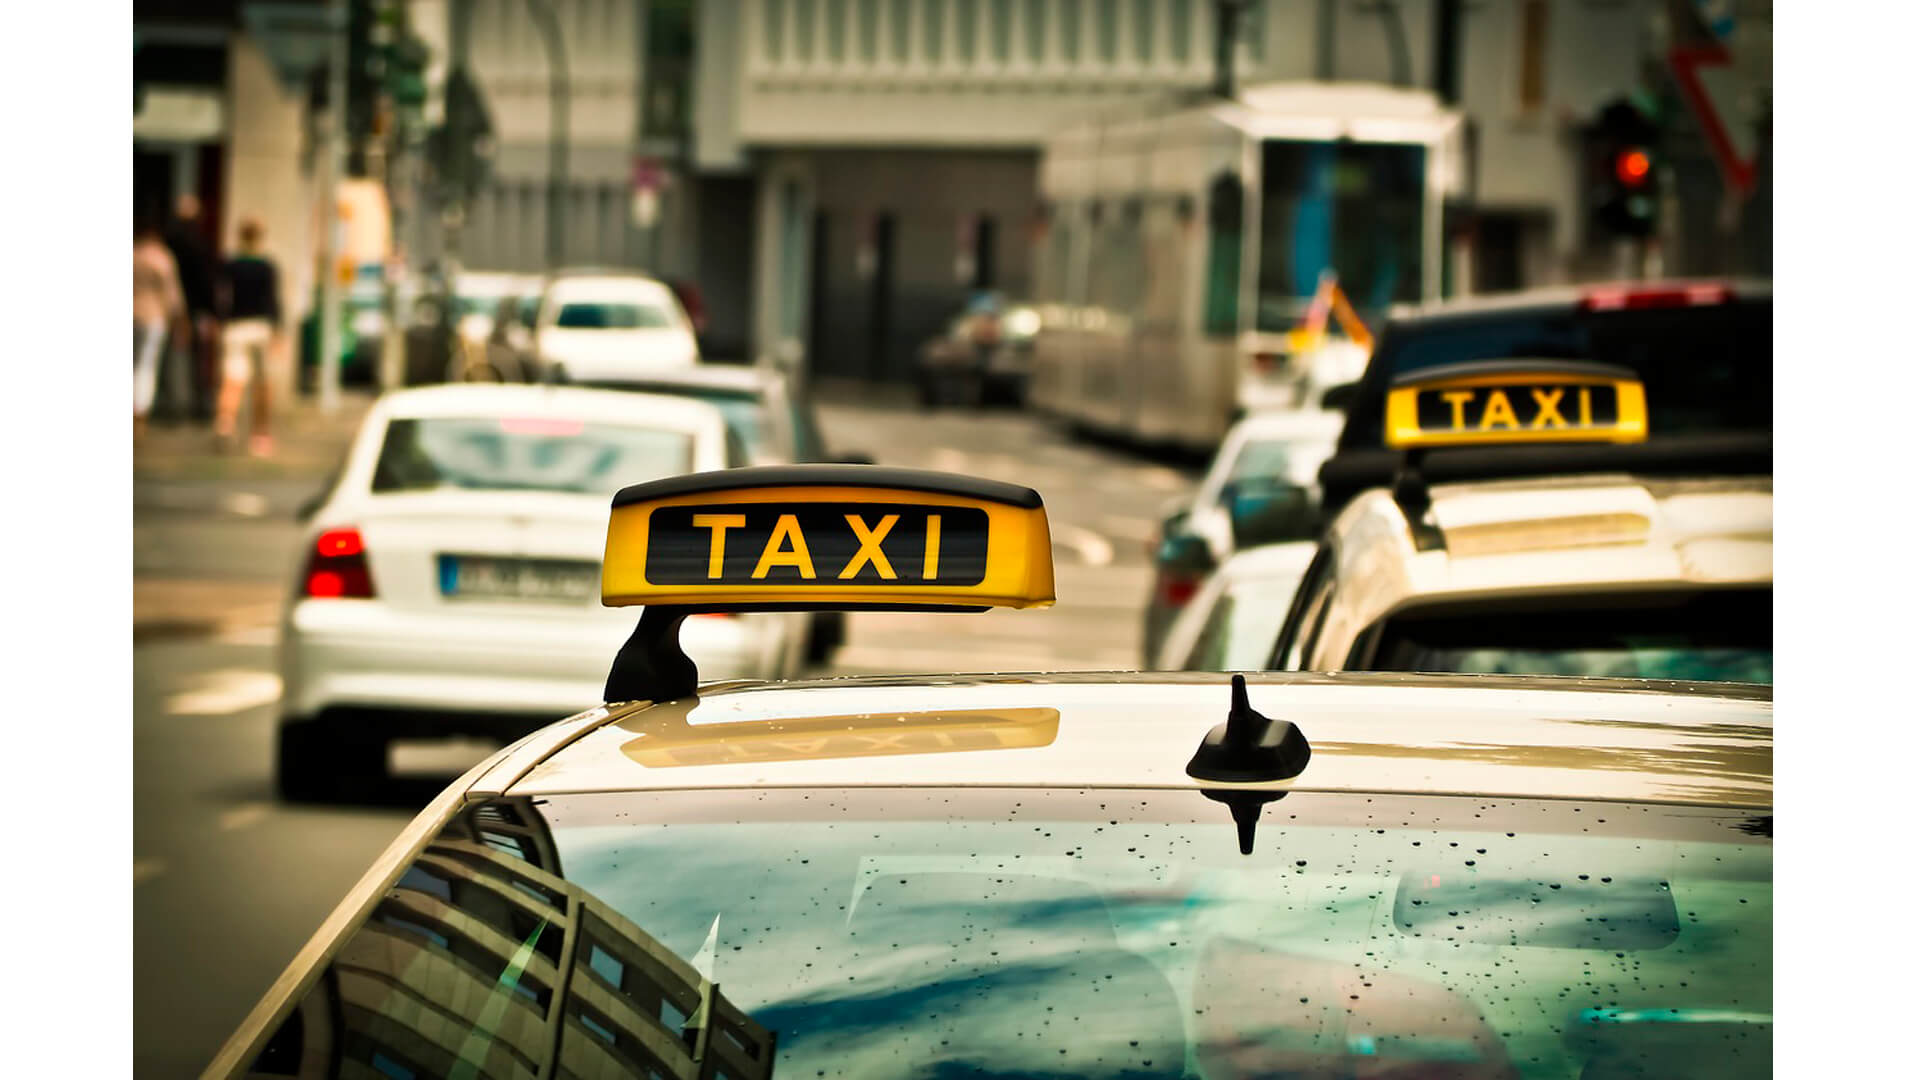 Rayonlara sərnişin daşıyan taksi sürücülərinin nəzərinə – VİDEO